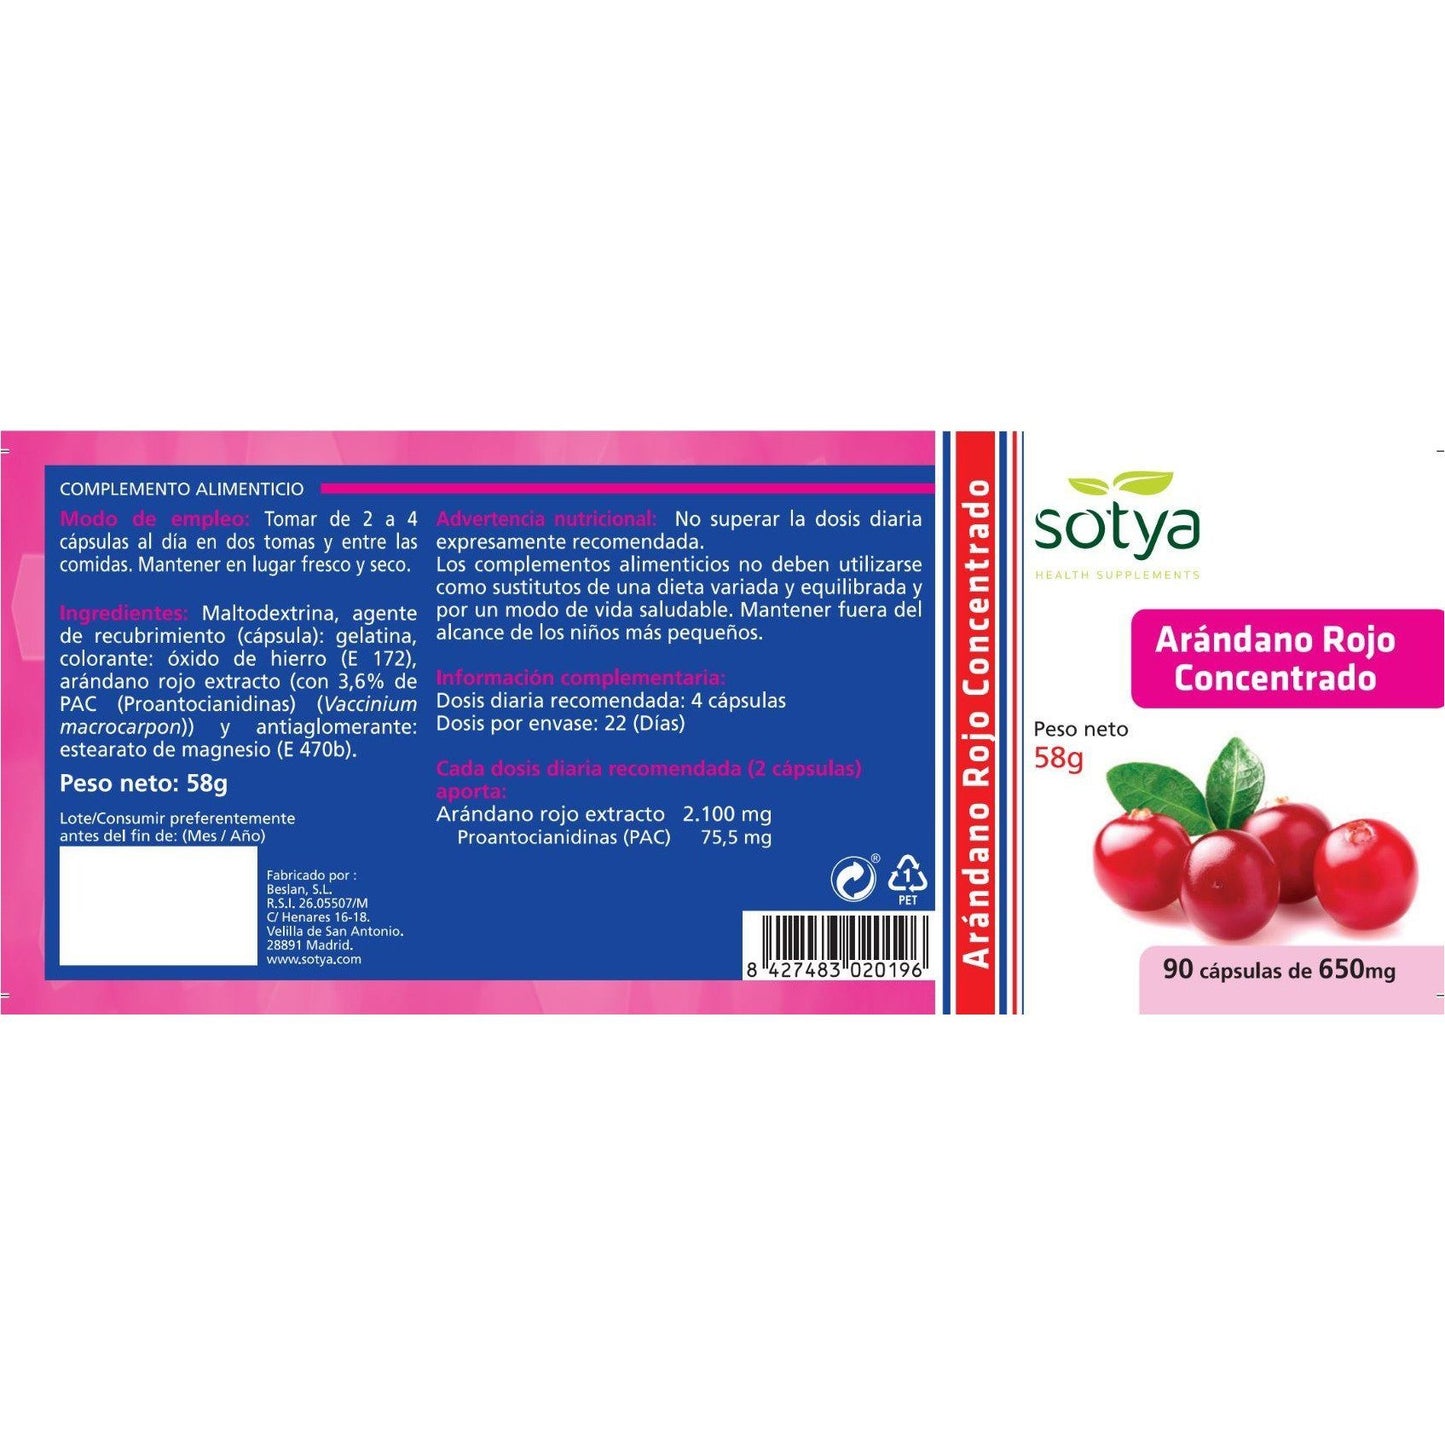 Arandano Rojo Concentrado 90 Capsulas | Sotya - Dietetica Ferrer